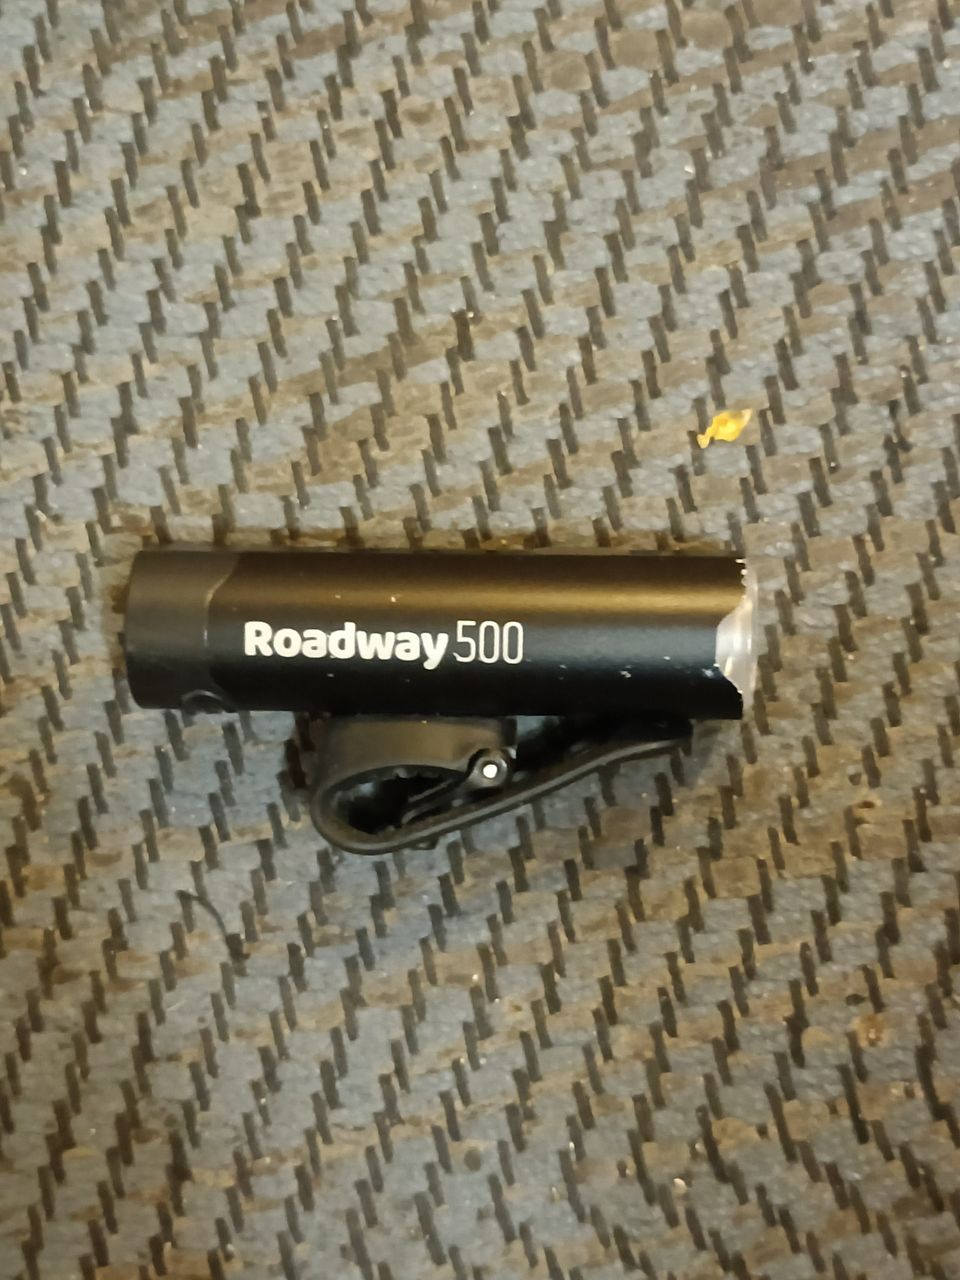 Roadway 500 usb ladattava valo. Todella kirkas.